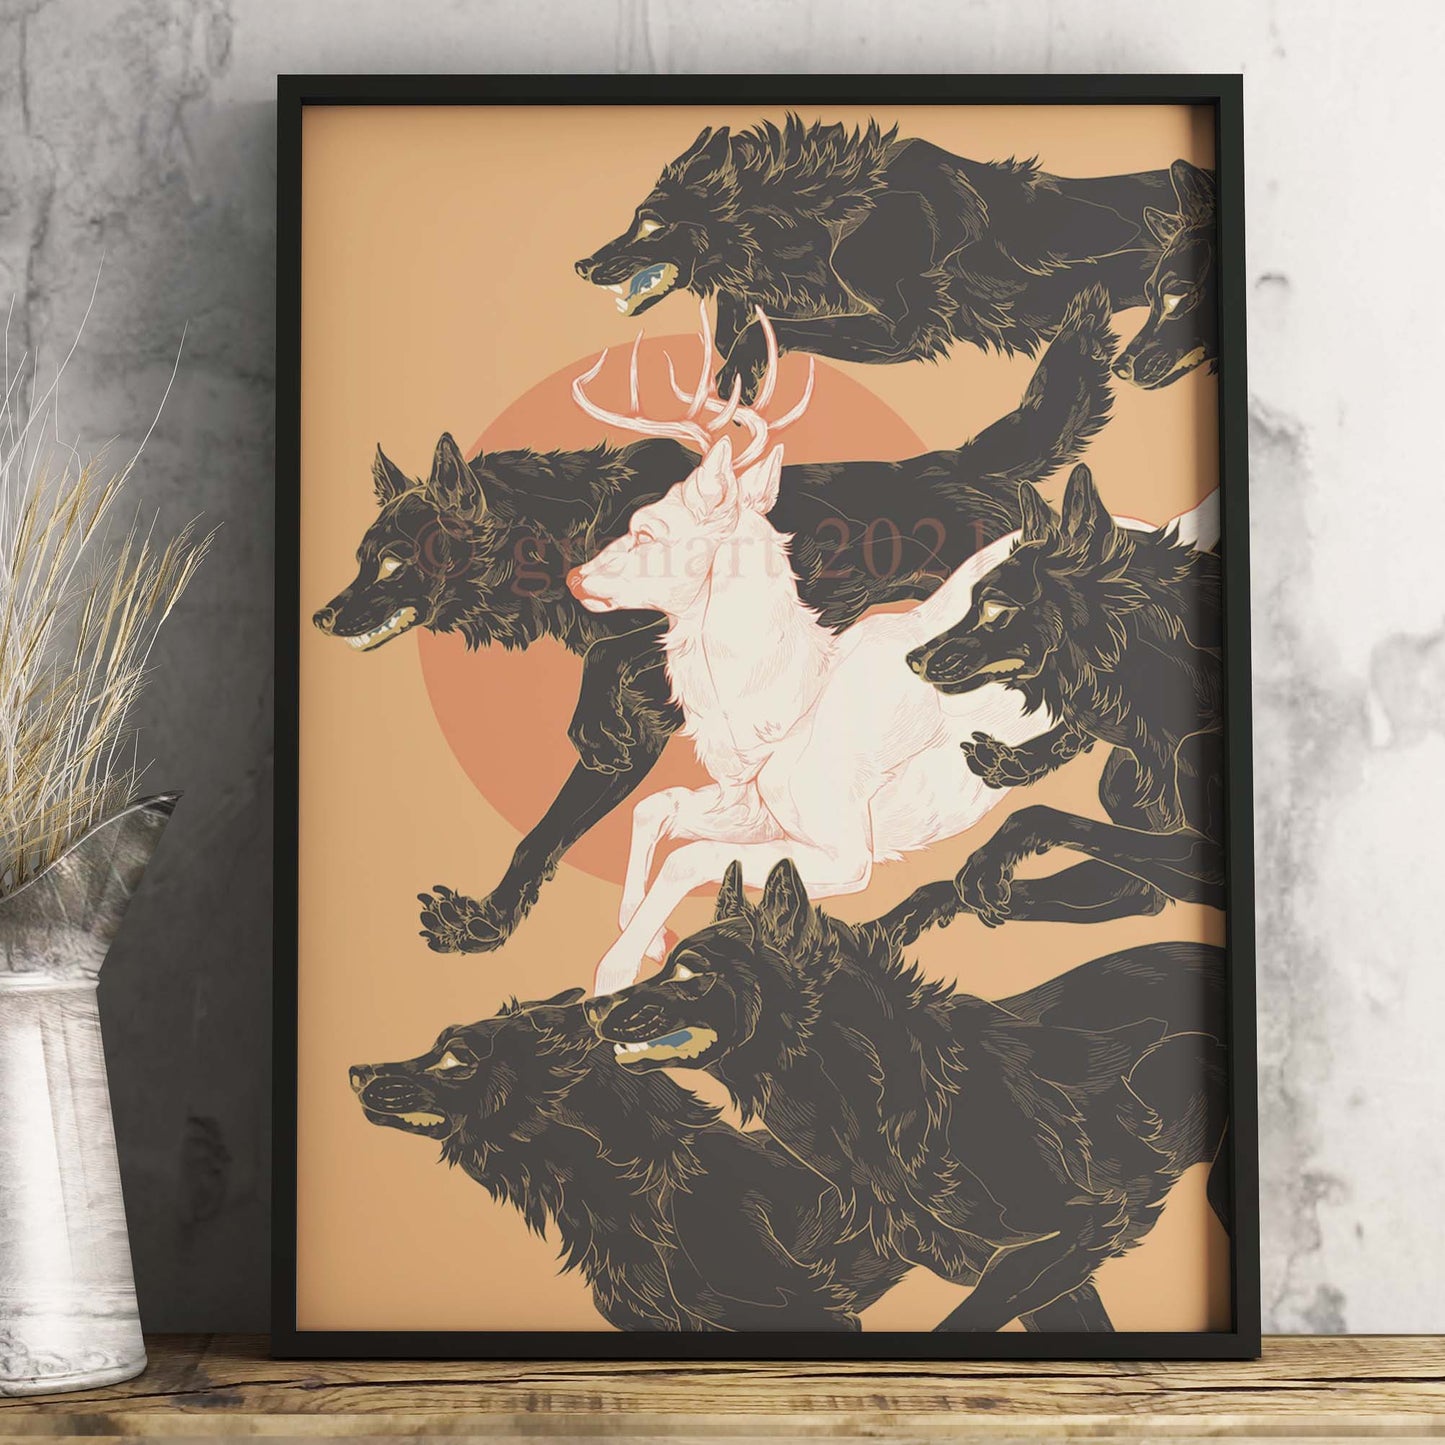 Art print "Run with wolves" by Gren Art